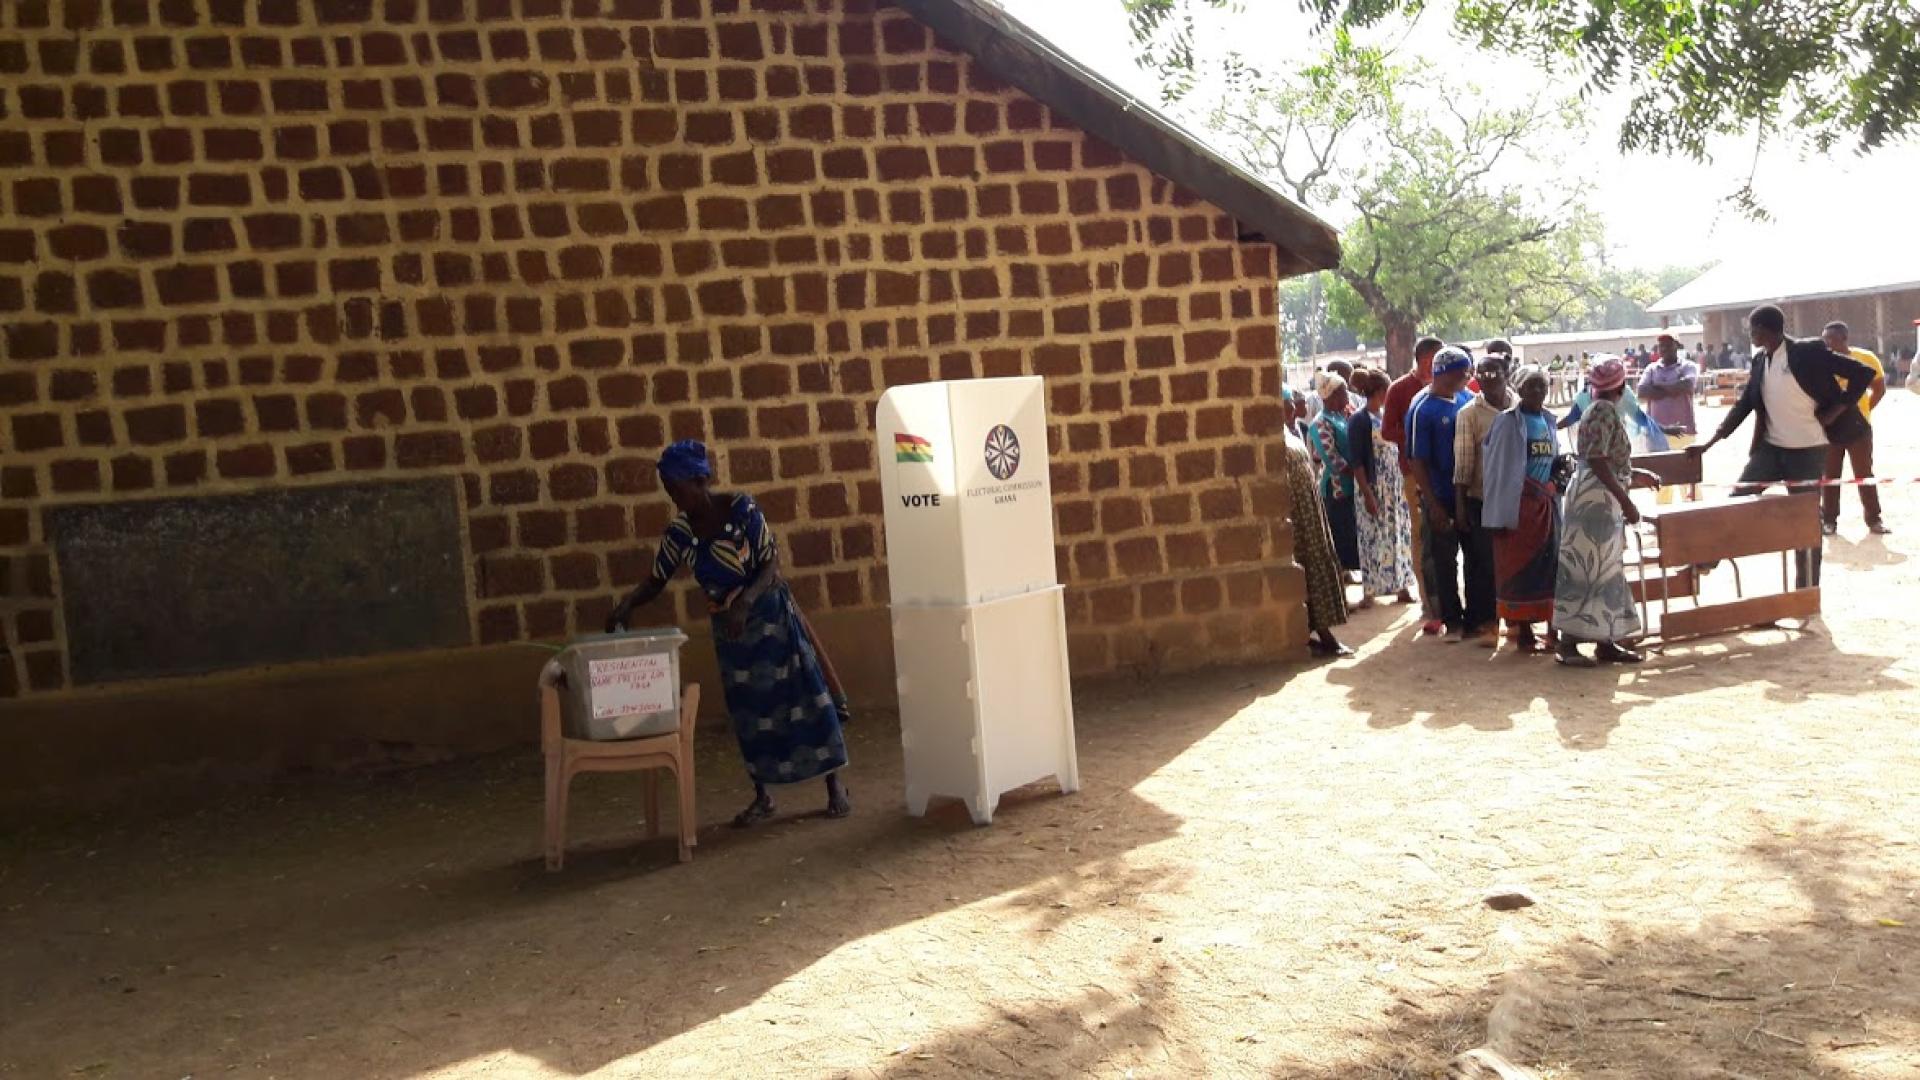 People in voting queue